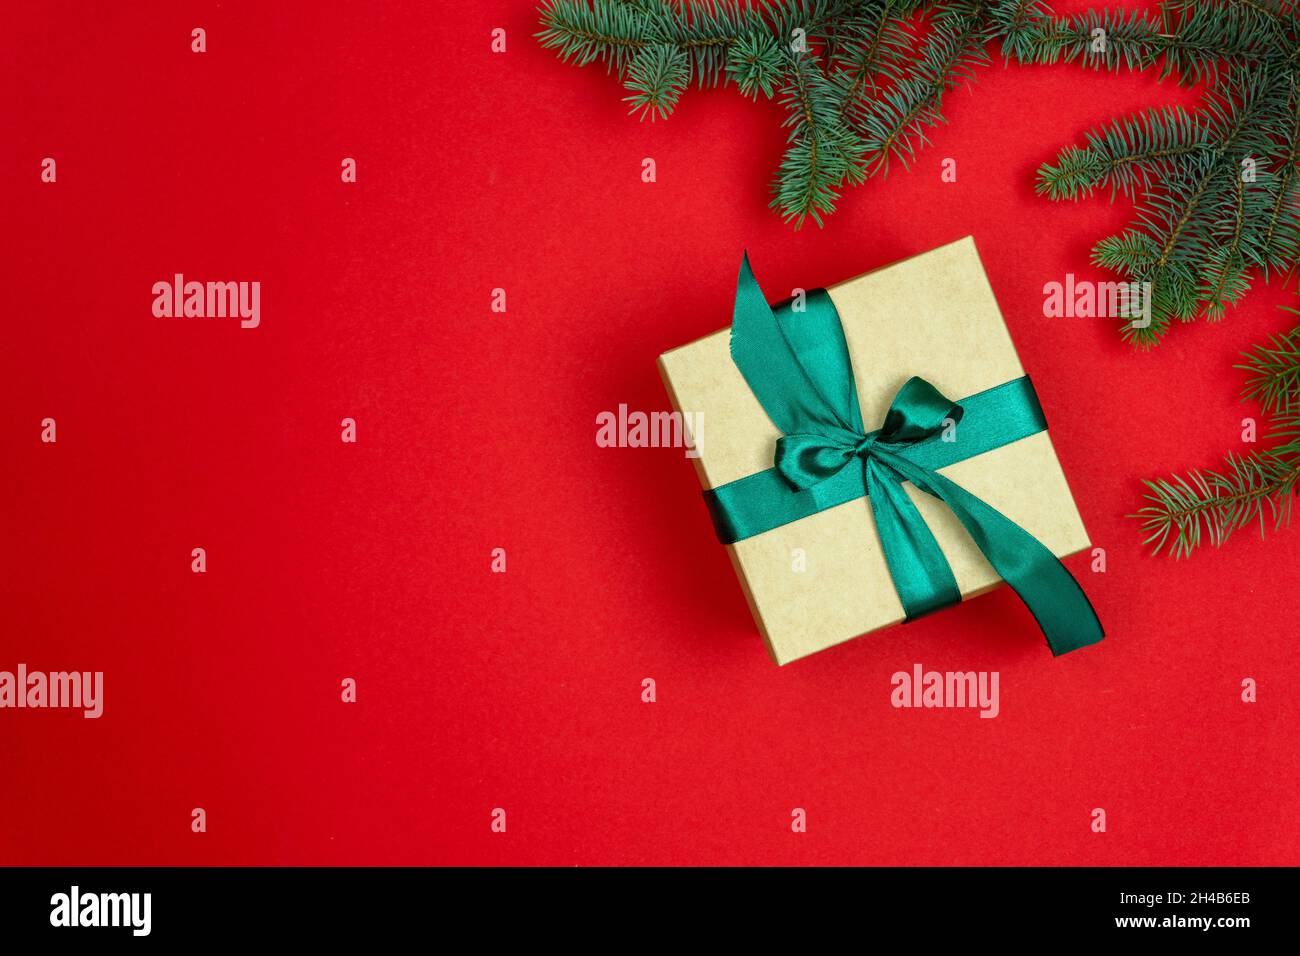 Weihnachtliche Tannenzweige auf rotem Hintergrund und Geschenkverpackung mit grüner Schleife. Das kunsthandwerklich gefärbte Geschenk ist mit einem zedigen Band gebunden. Flach liegend, Draufsicht, Kopie Stockfoto